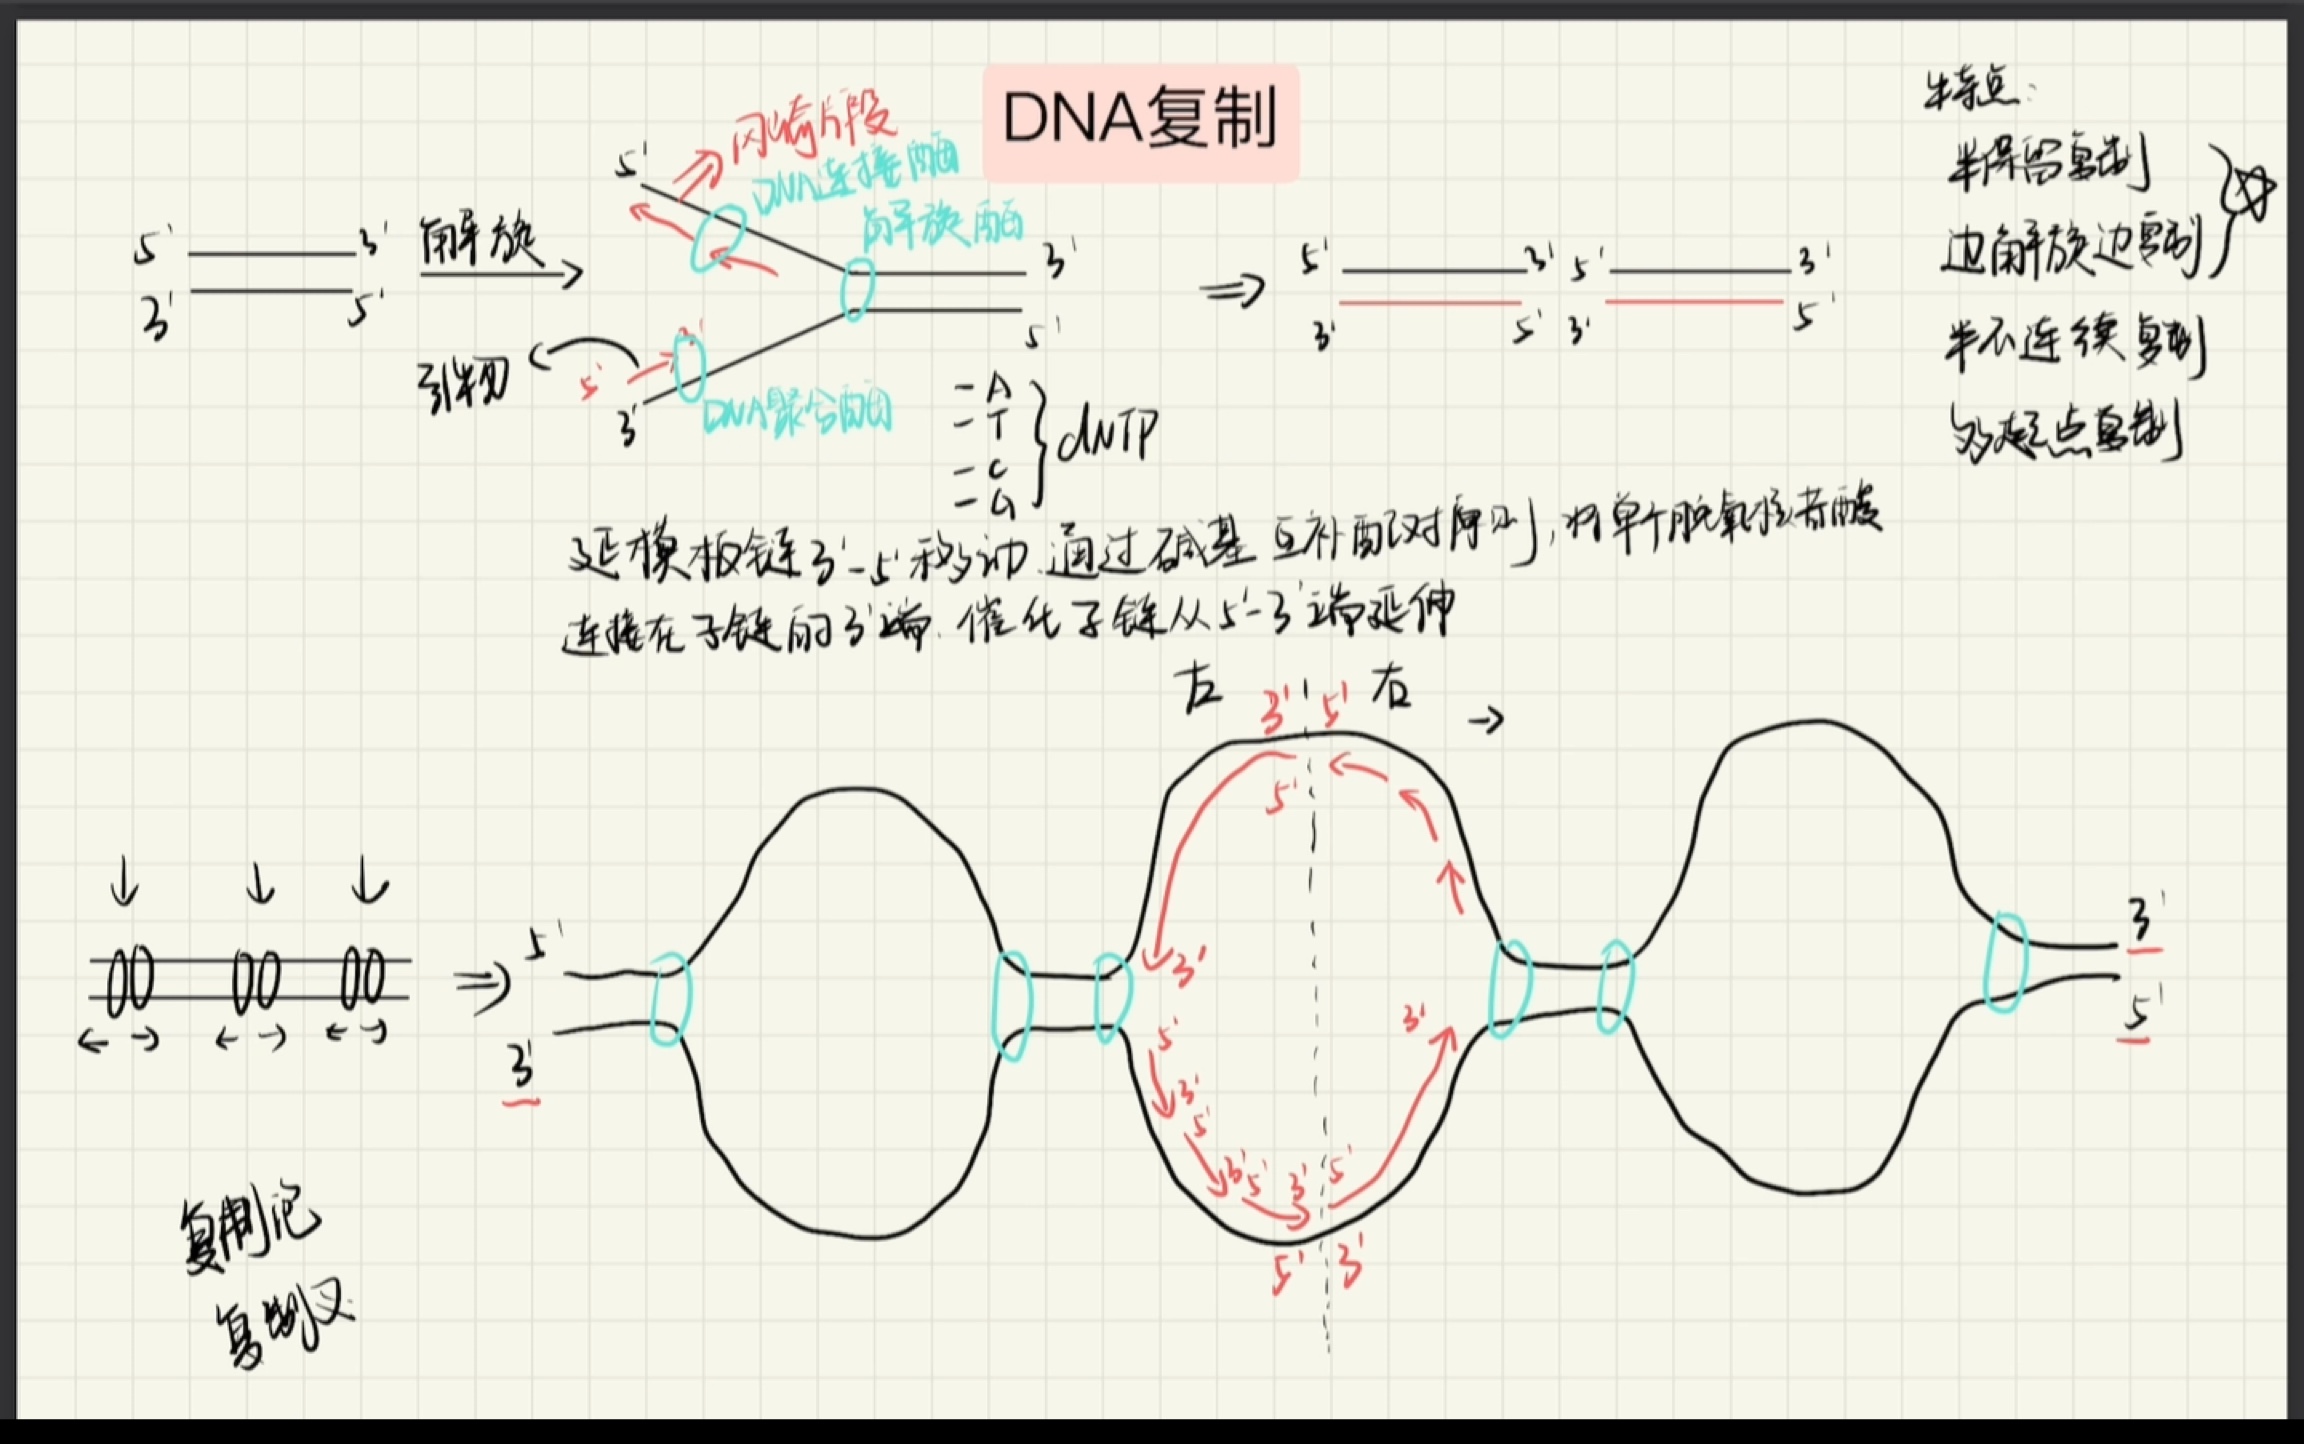 DNA复制冈崎片段图片